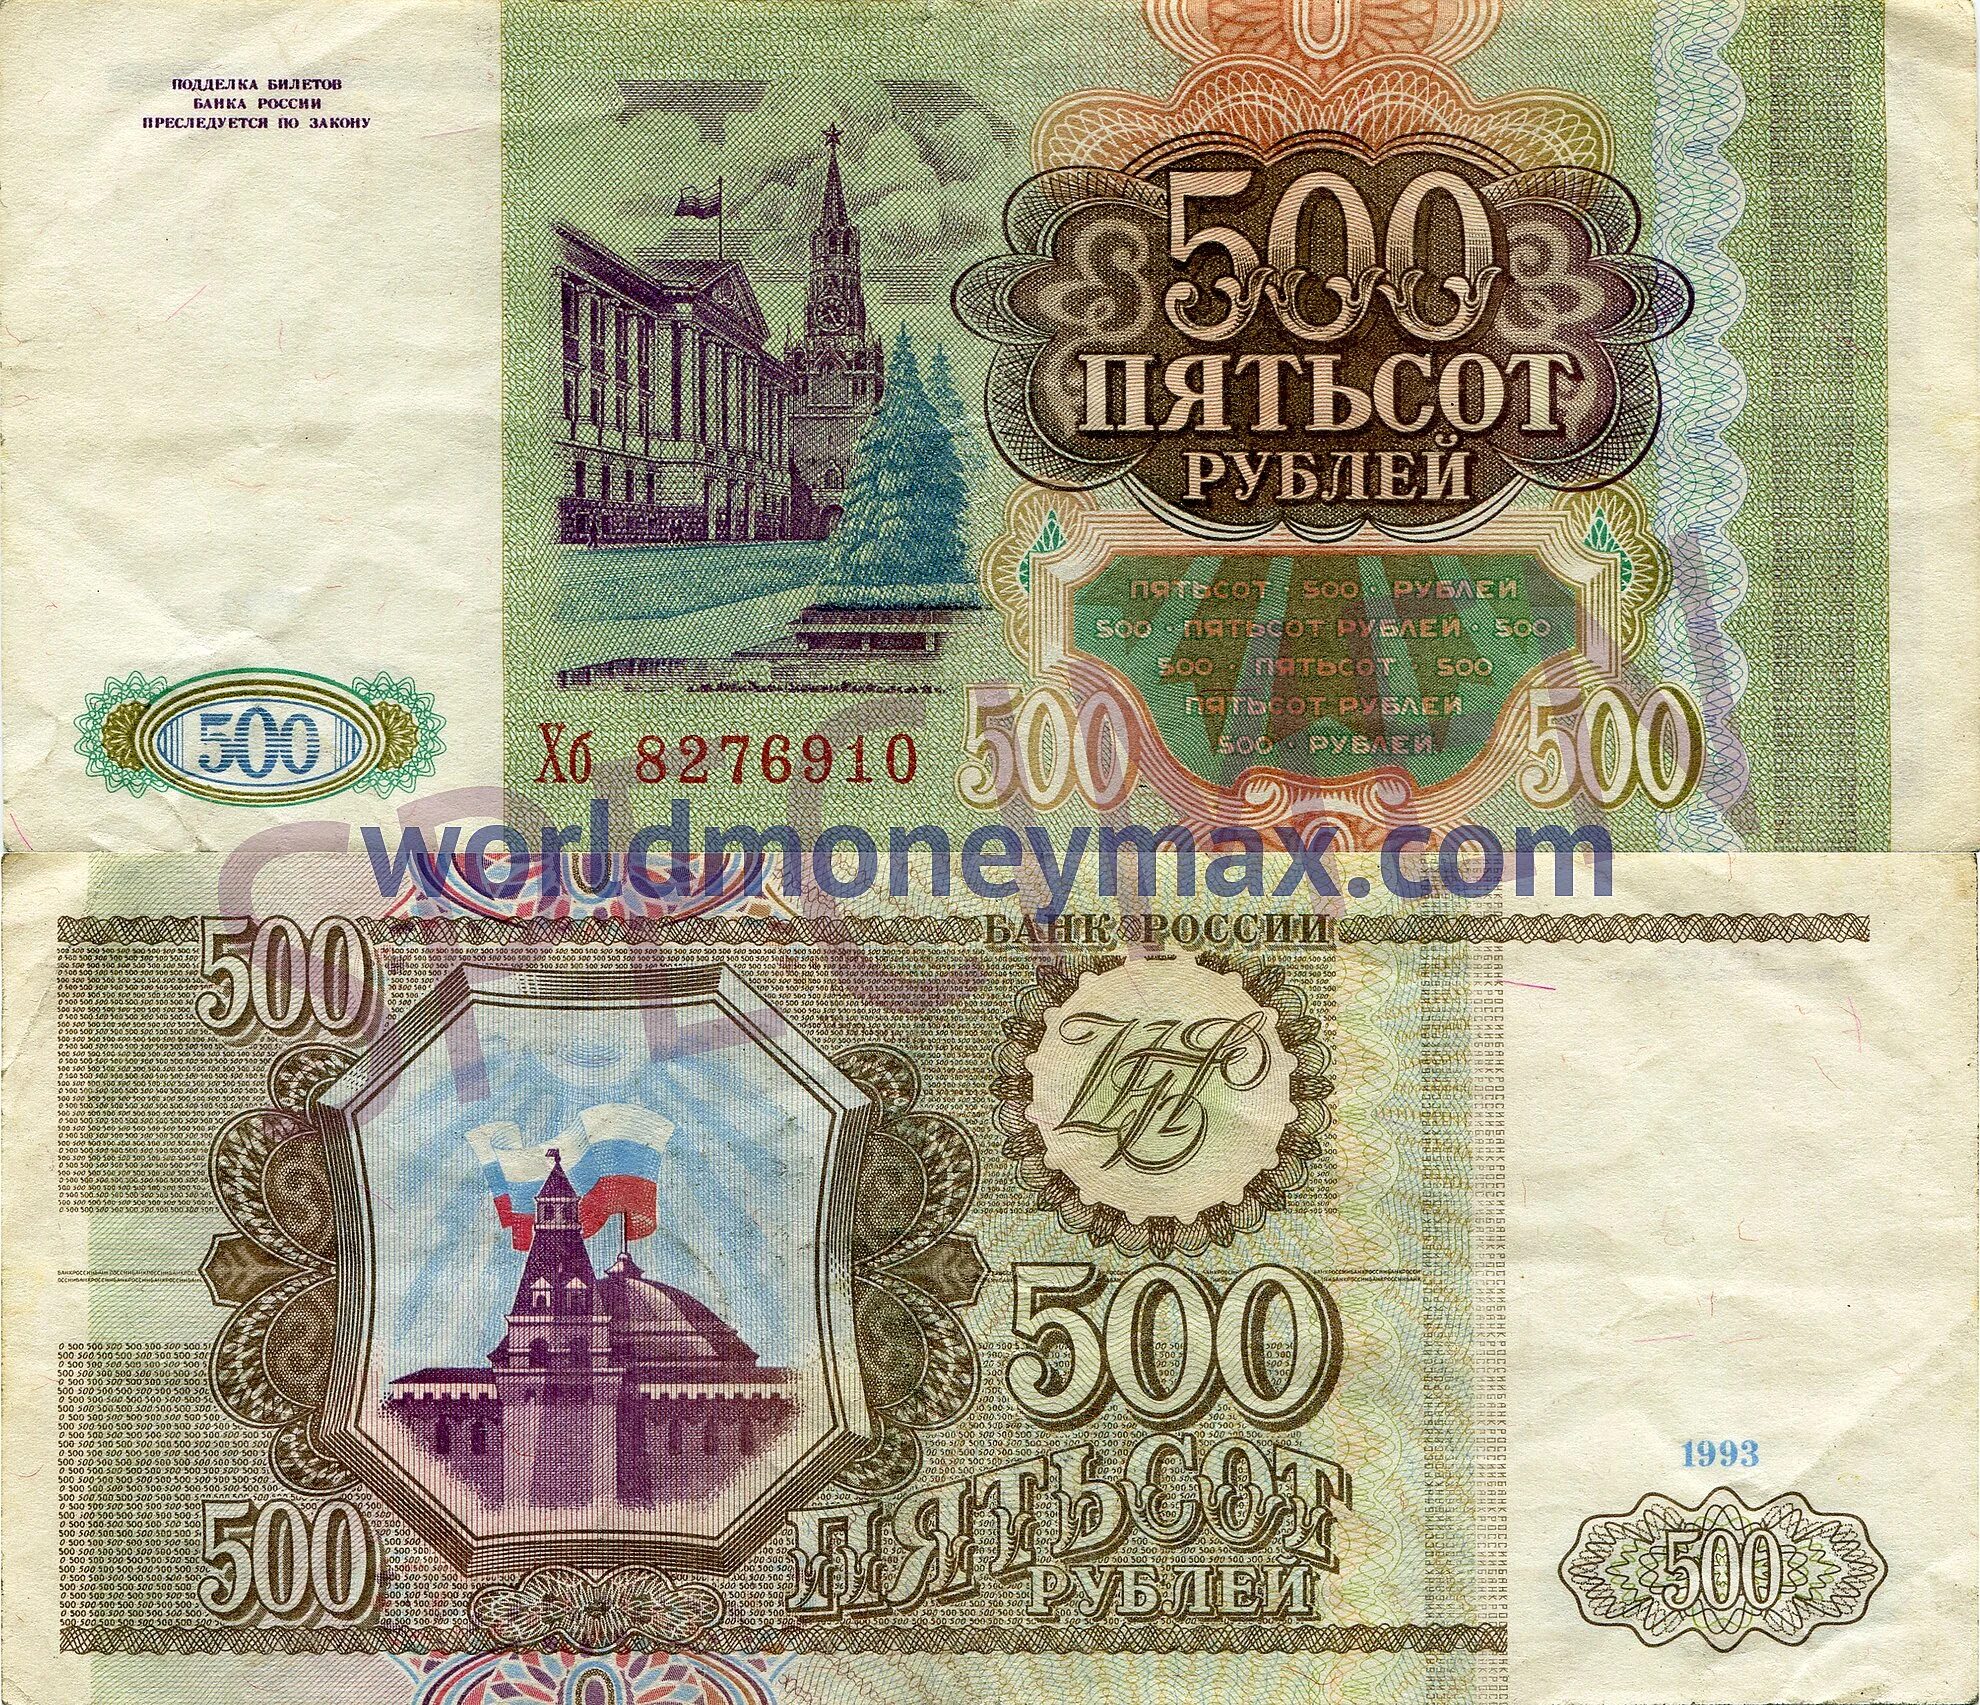 500 Рублей 1993. Купюра 500 рублей 1993 года. Пятьсот рублей 1993 года. Банкнота 500 рублей 1993.